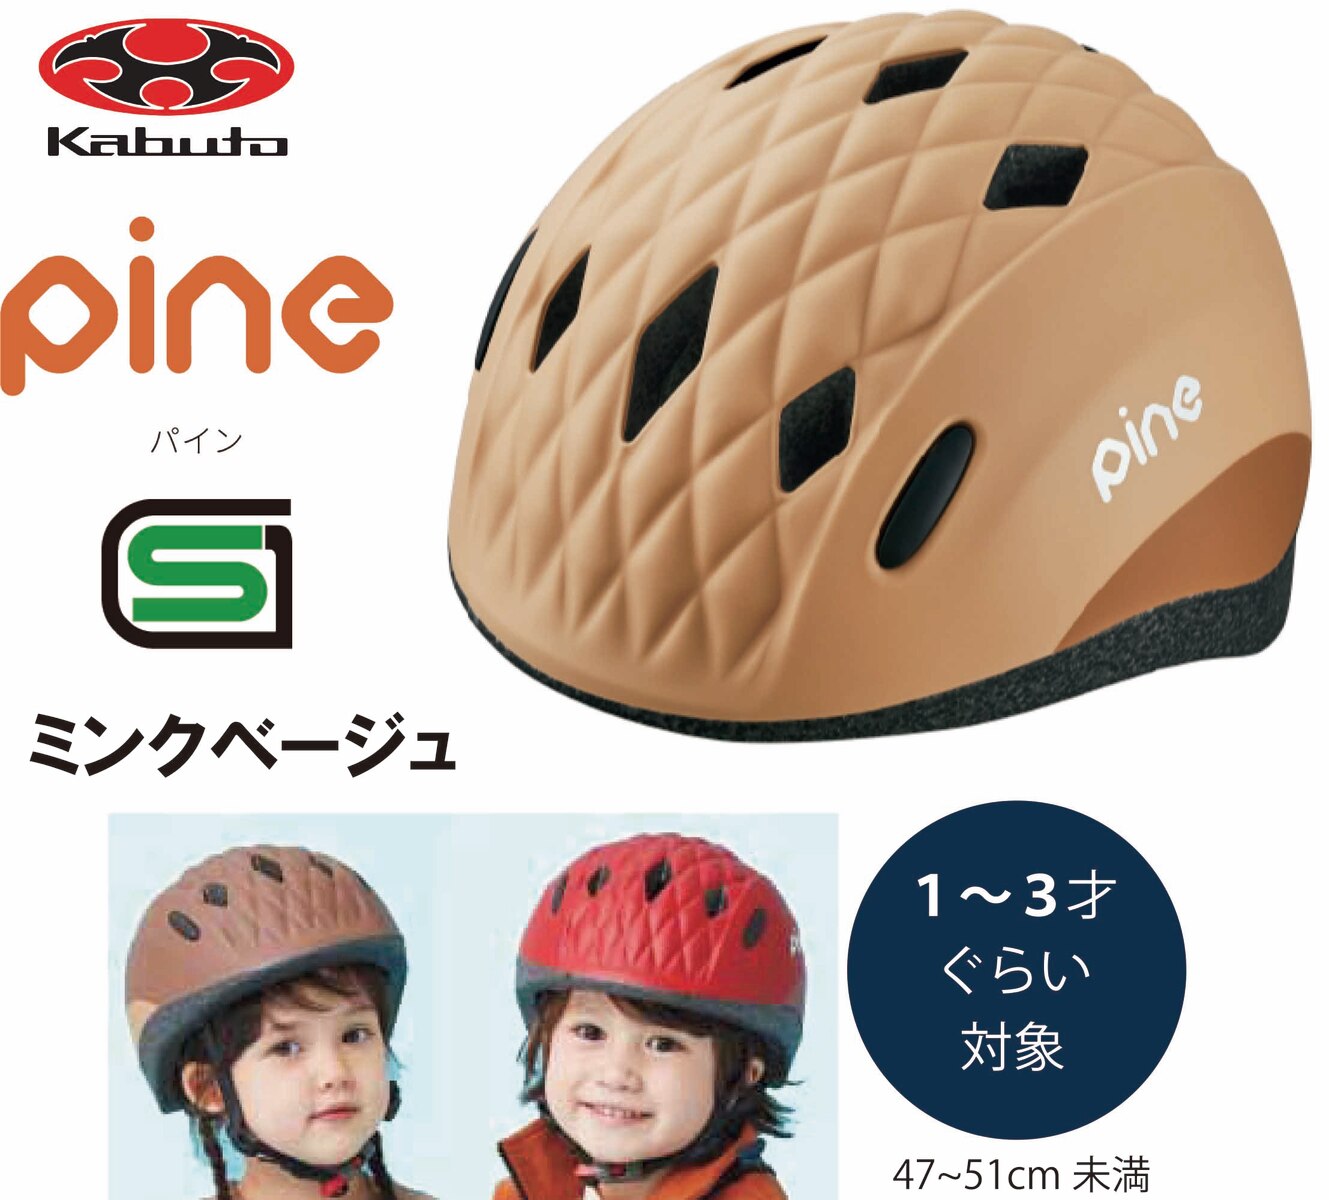 自転車用ヘルメット OGK pine パイン 子ども - アクセサリー